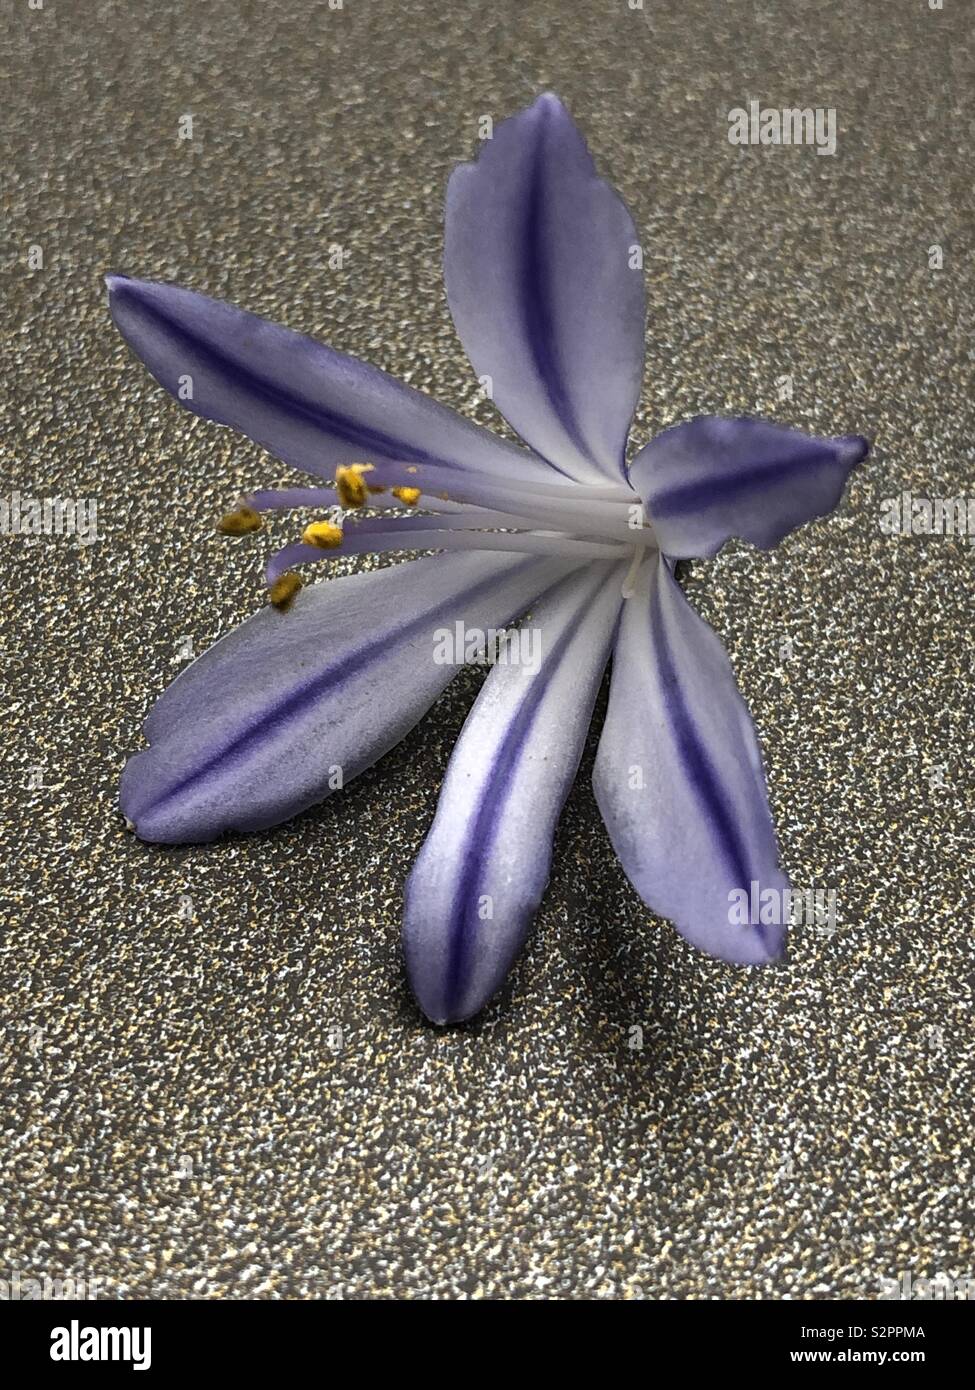 Fleuron de l'agapanthus unique fleur avec étamines et stigmatisation Banque D'Images